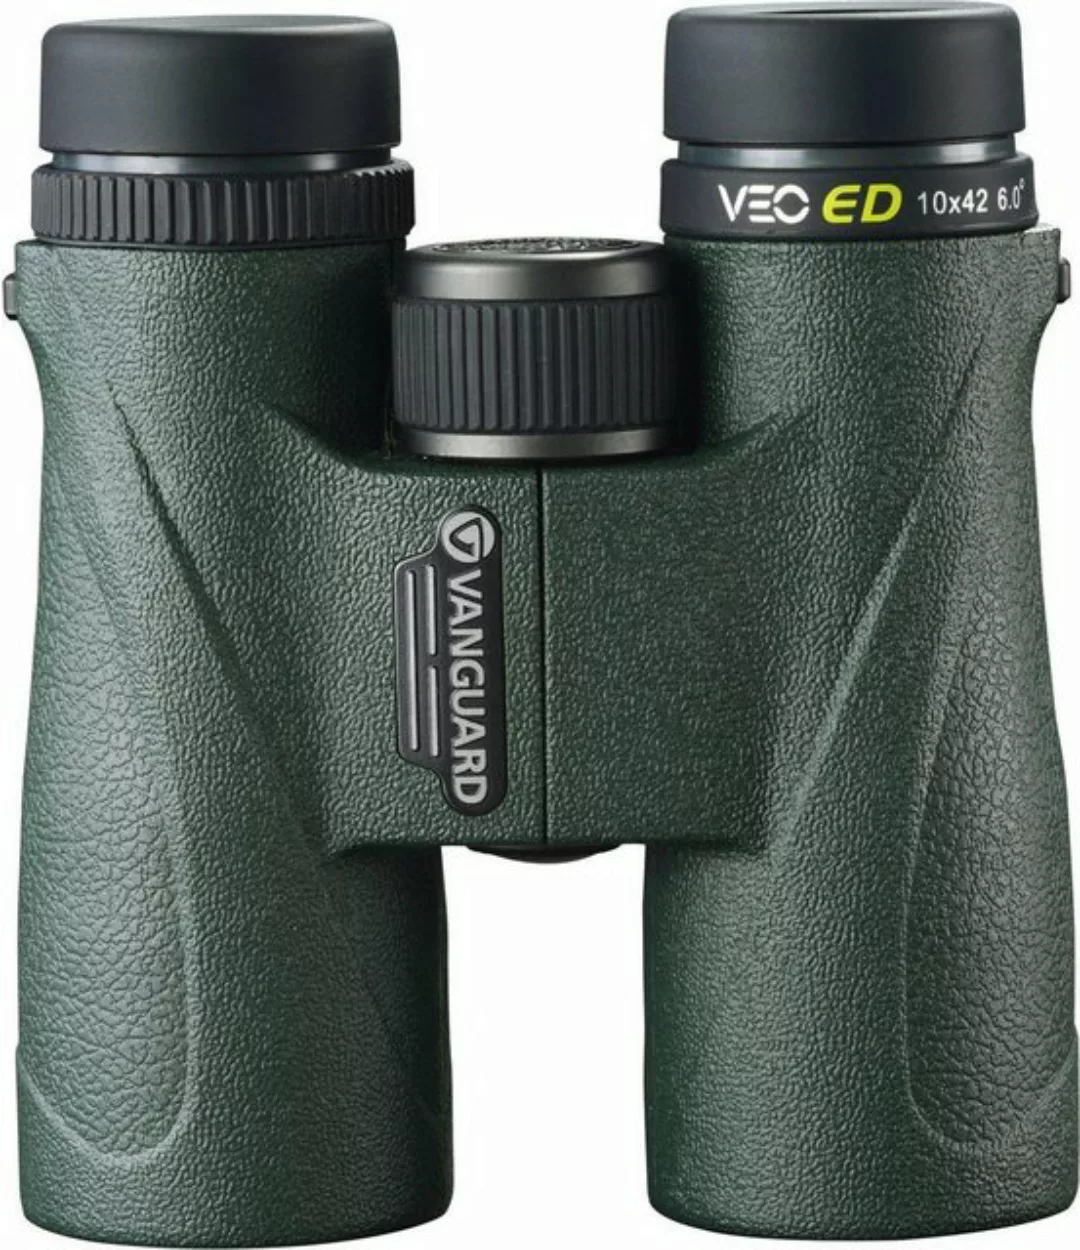 Vanguard Fernglas VEO ED 10x42 Fernglas günstig online kaufen